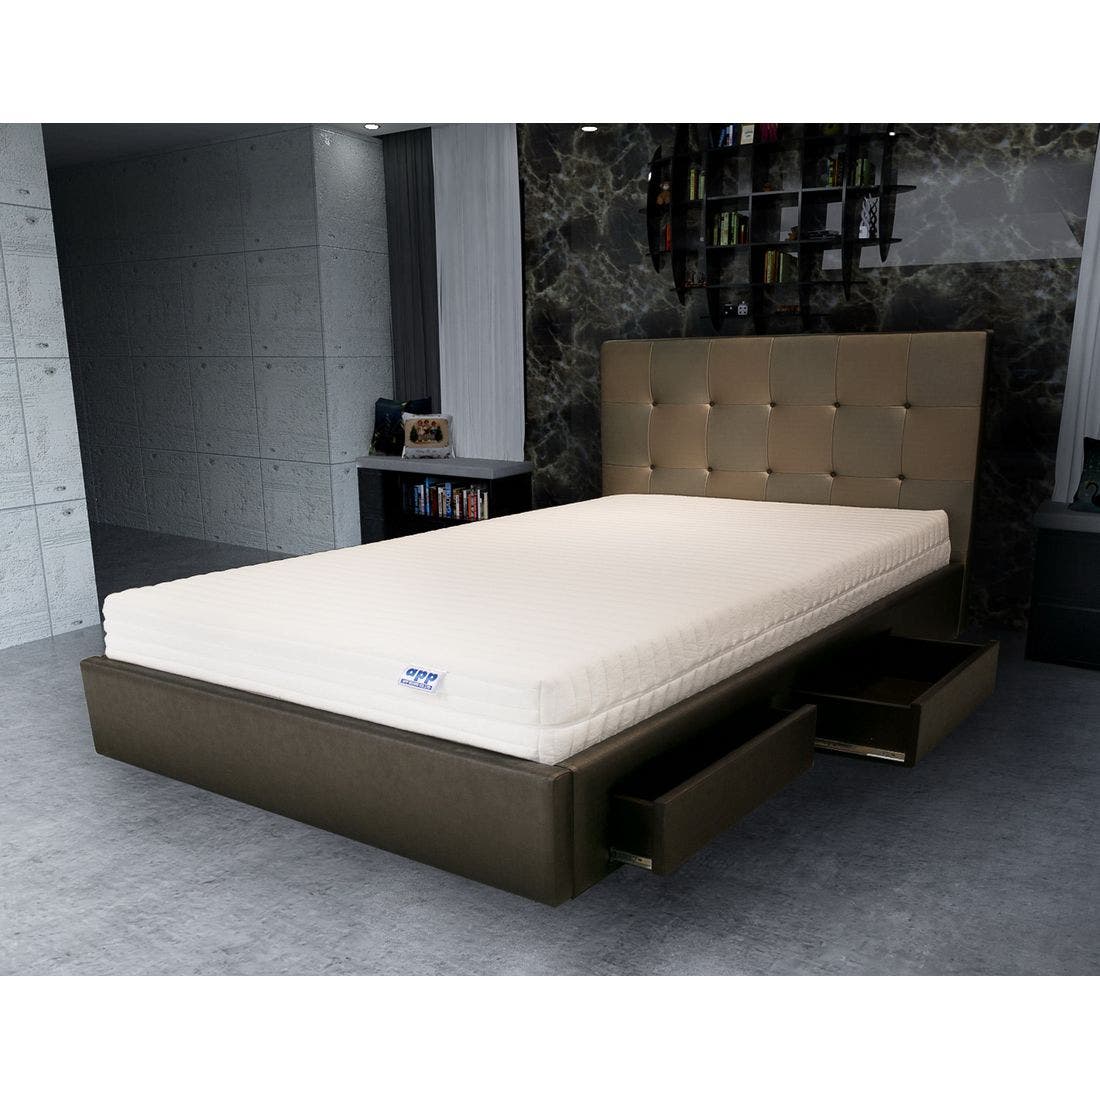 39001628-mattress-bedding-mattresses-latex-mattresses-31